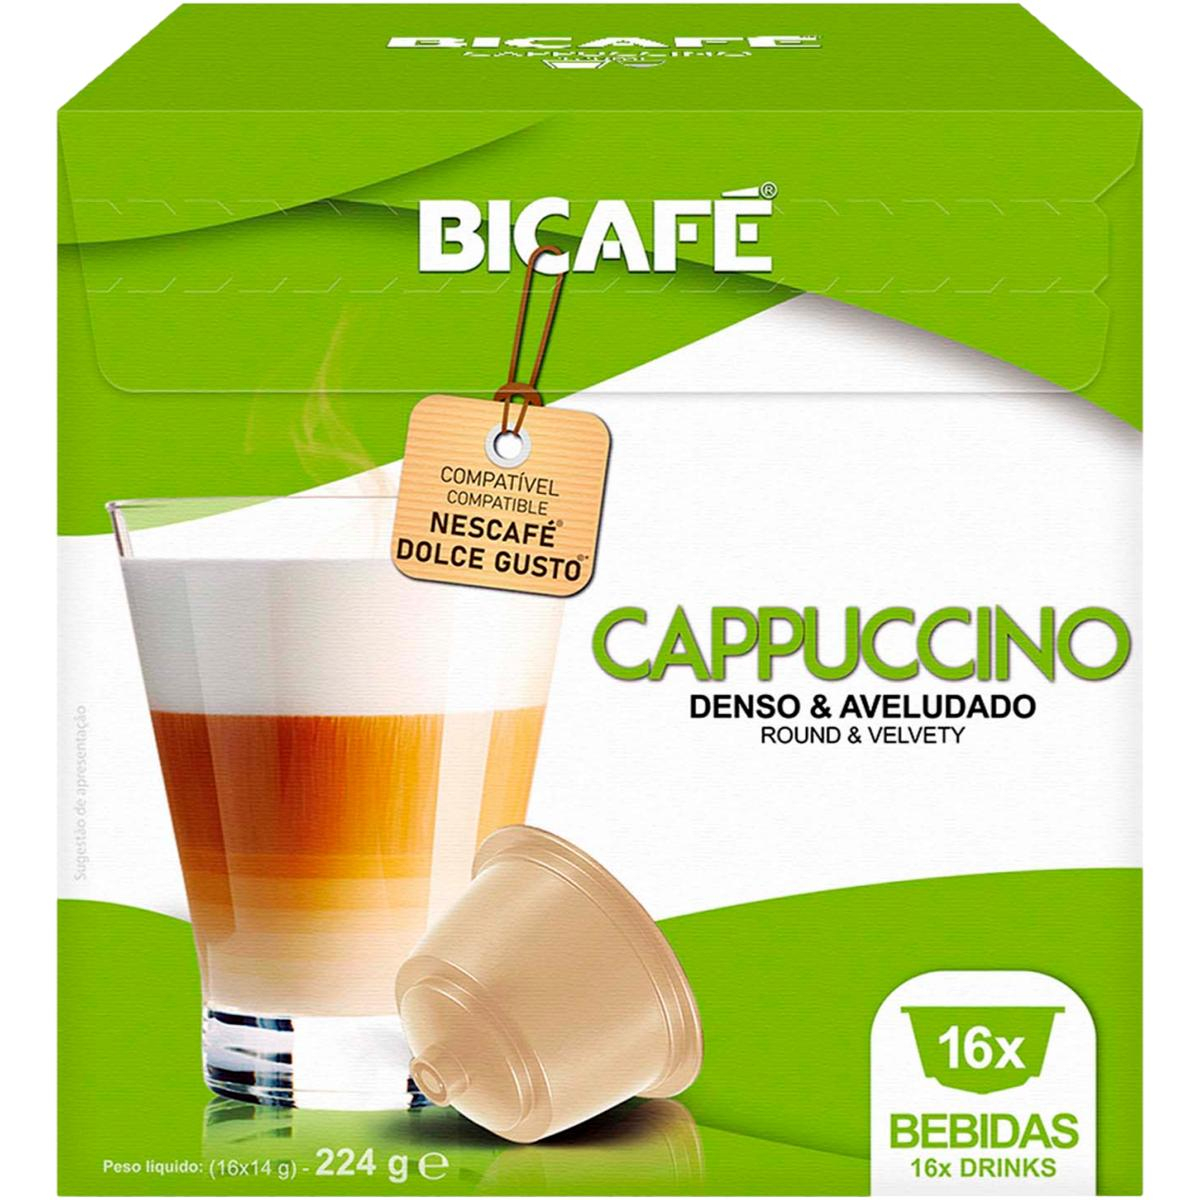 Capsules Dolce Gusto * Cappuccino Bicafé 16 Un